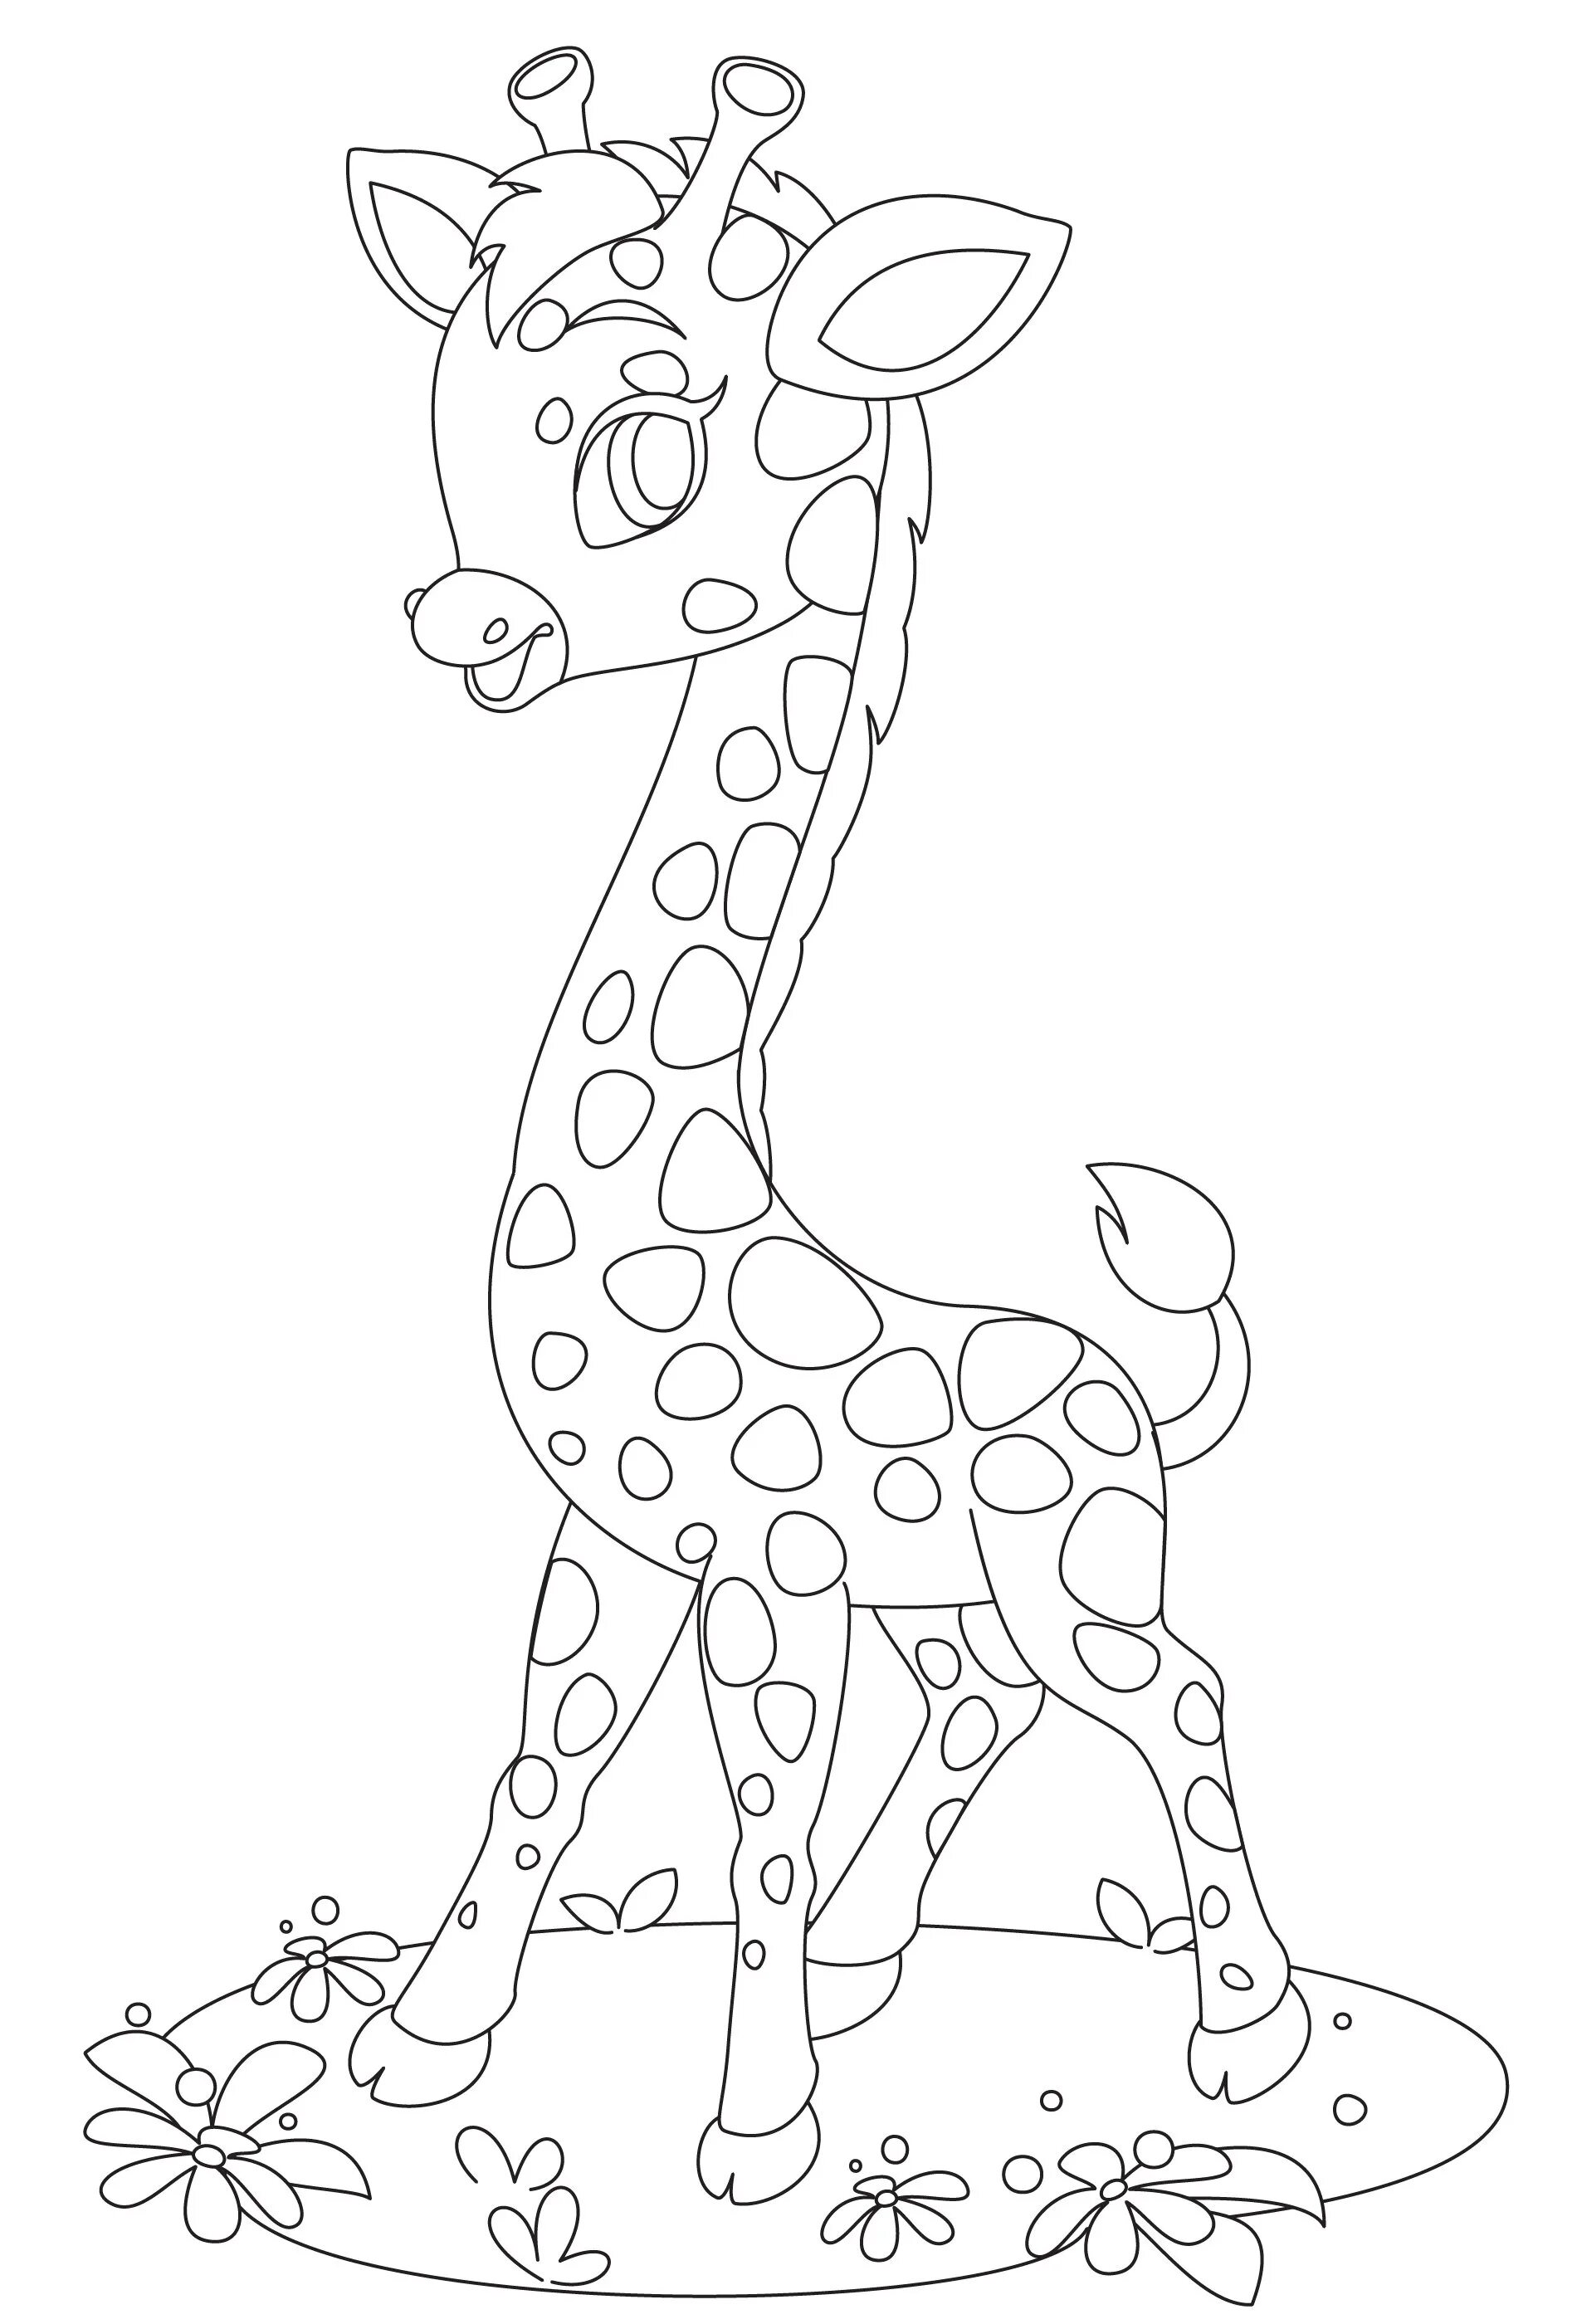 Раскраска с жирафом для детей 6-7 лет